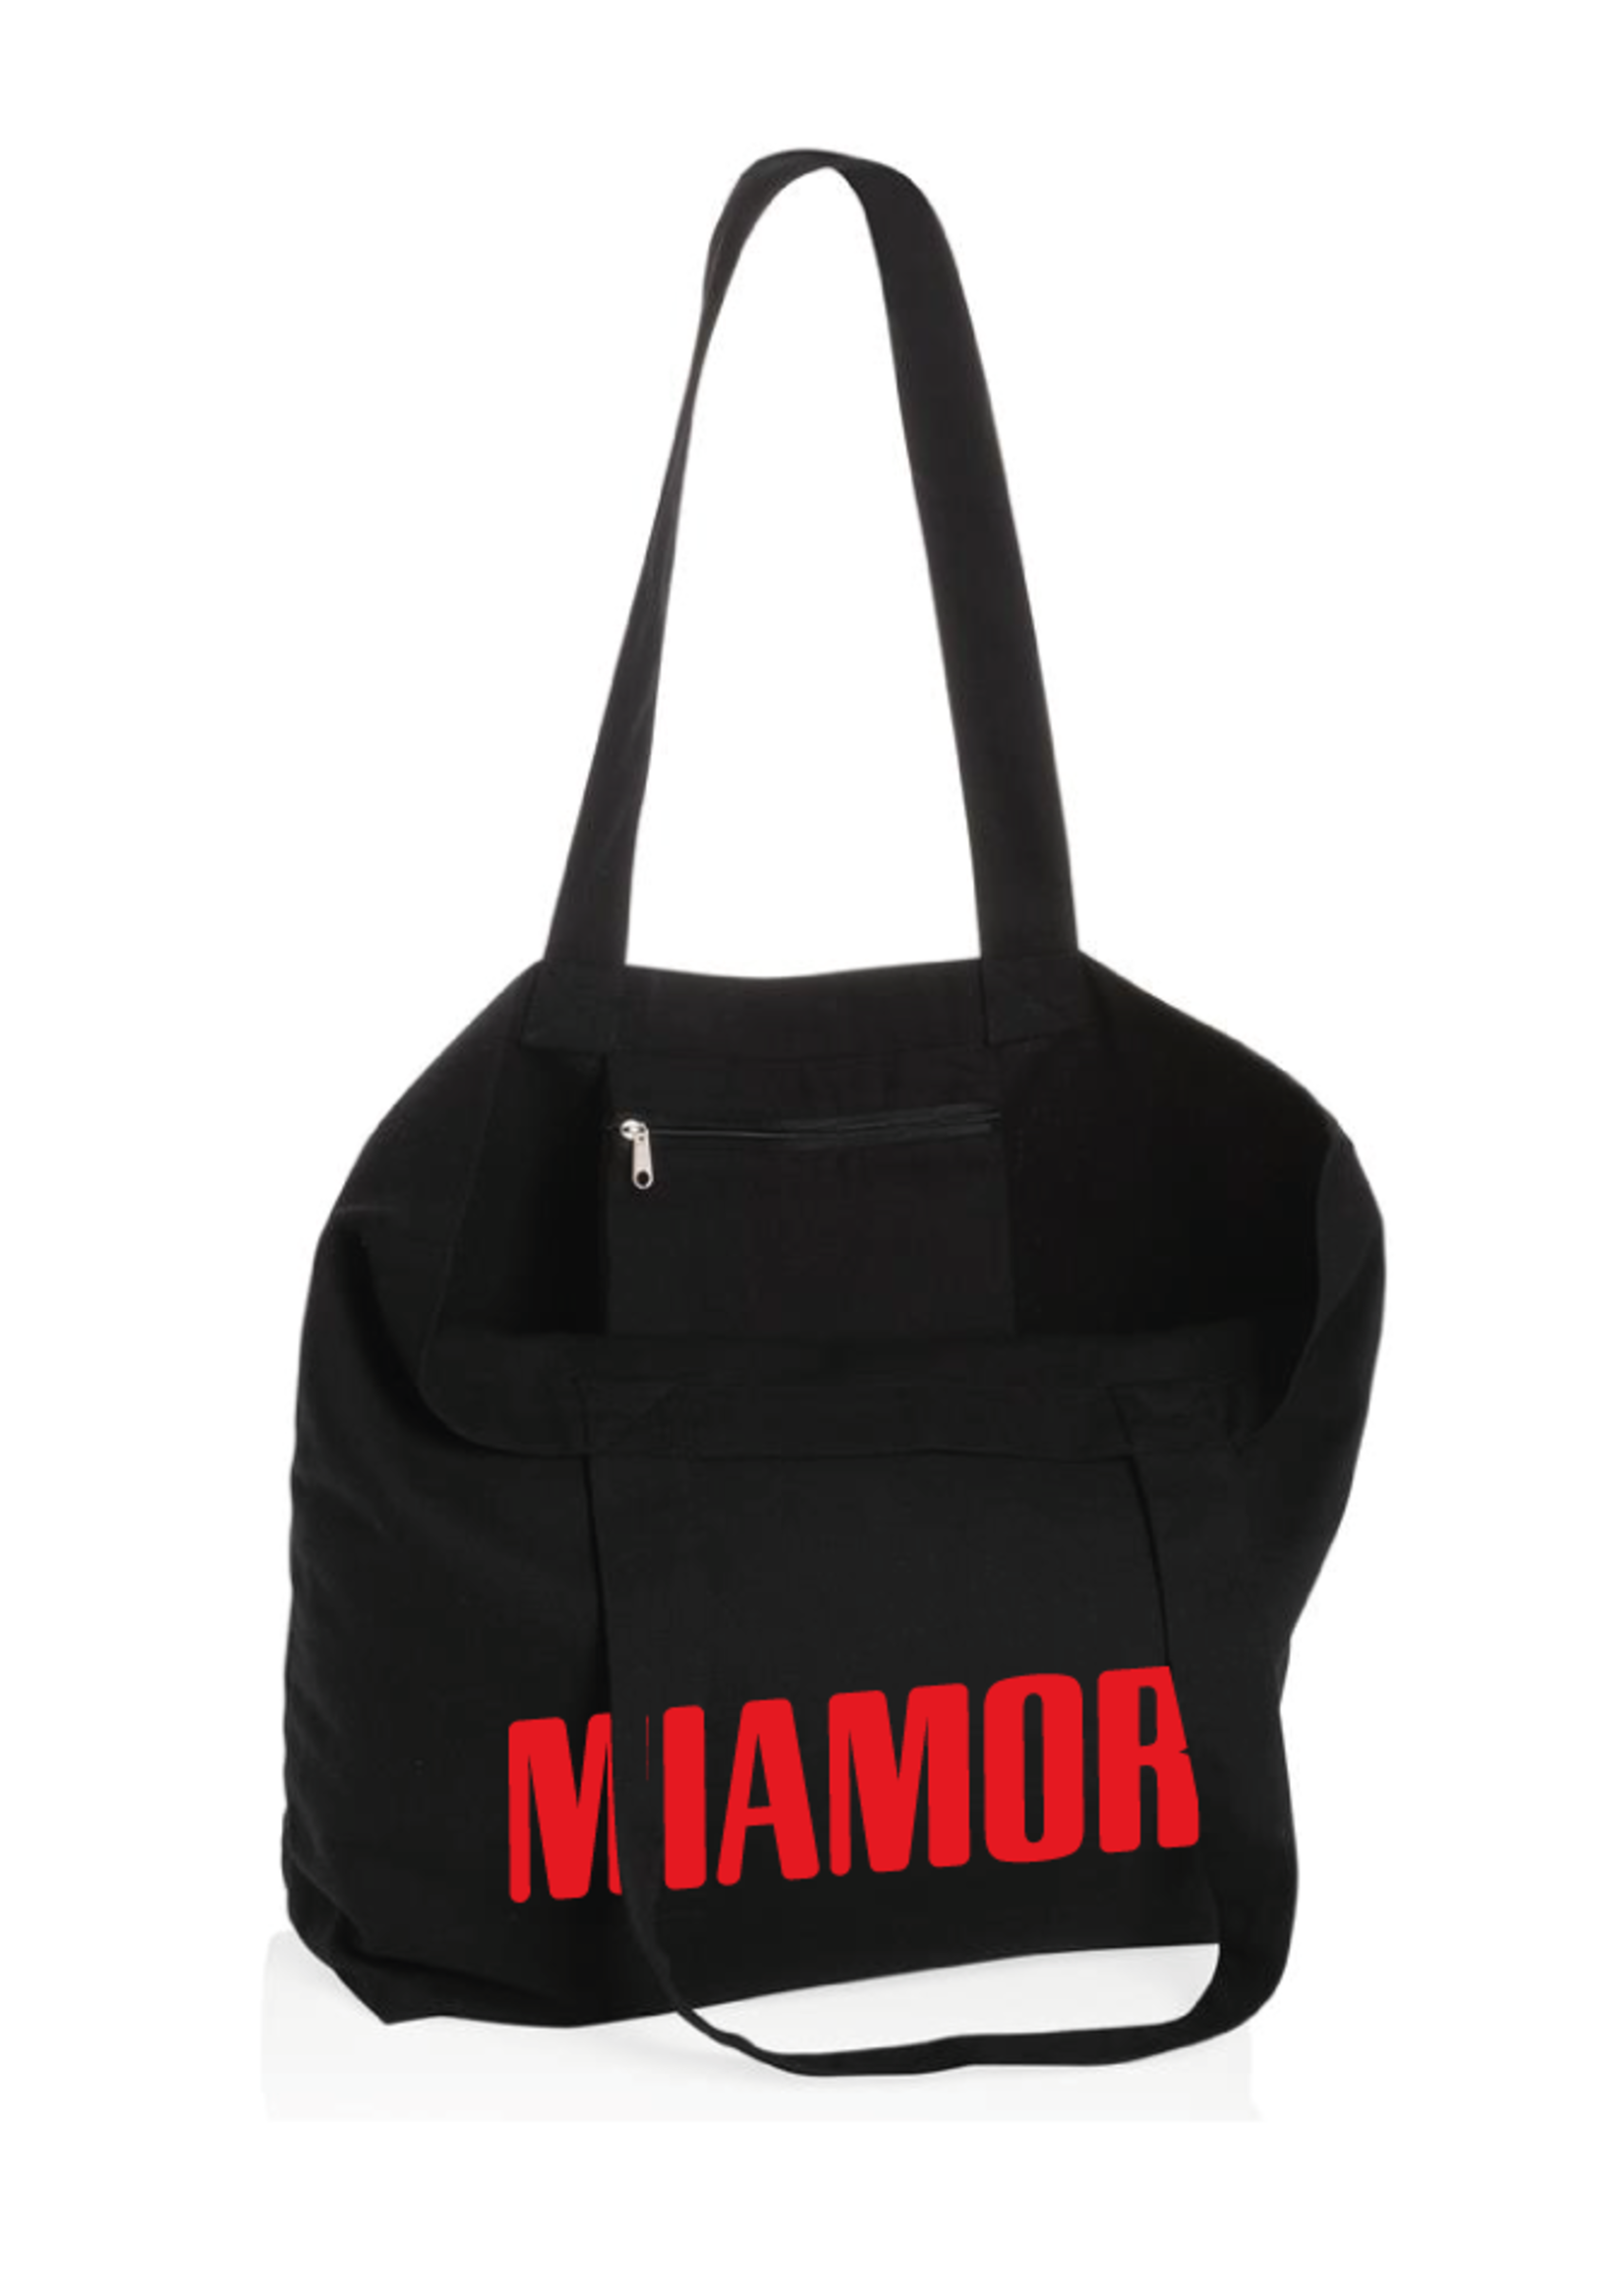 Miamor Tote bag - Black Red Logo